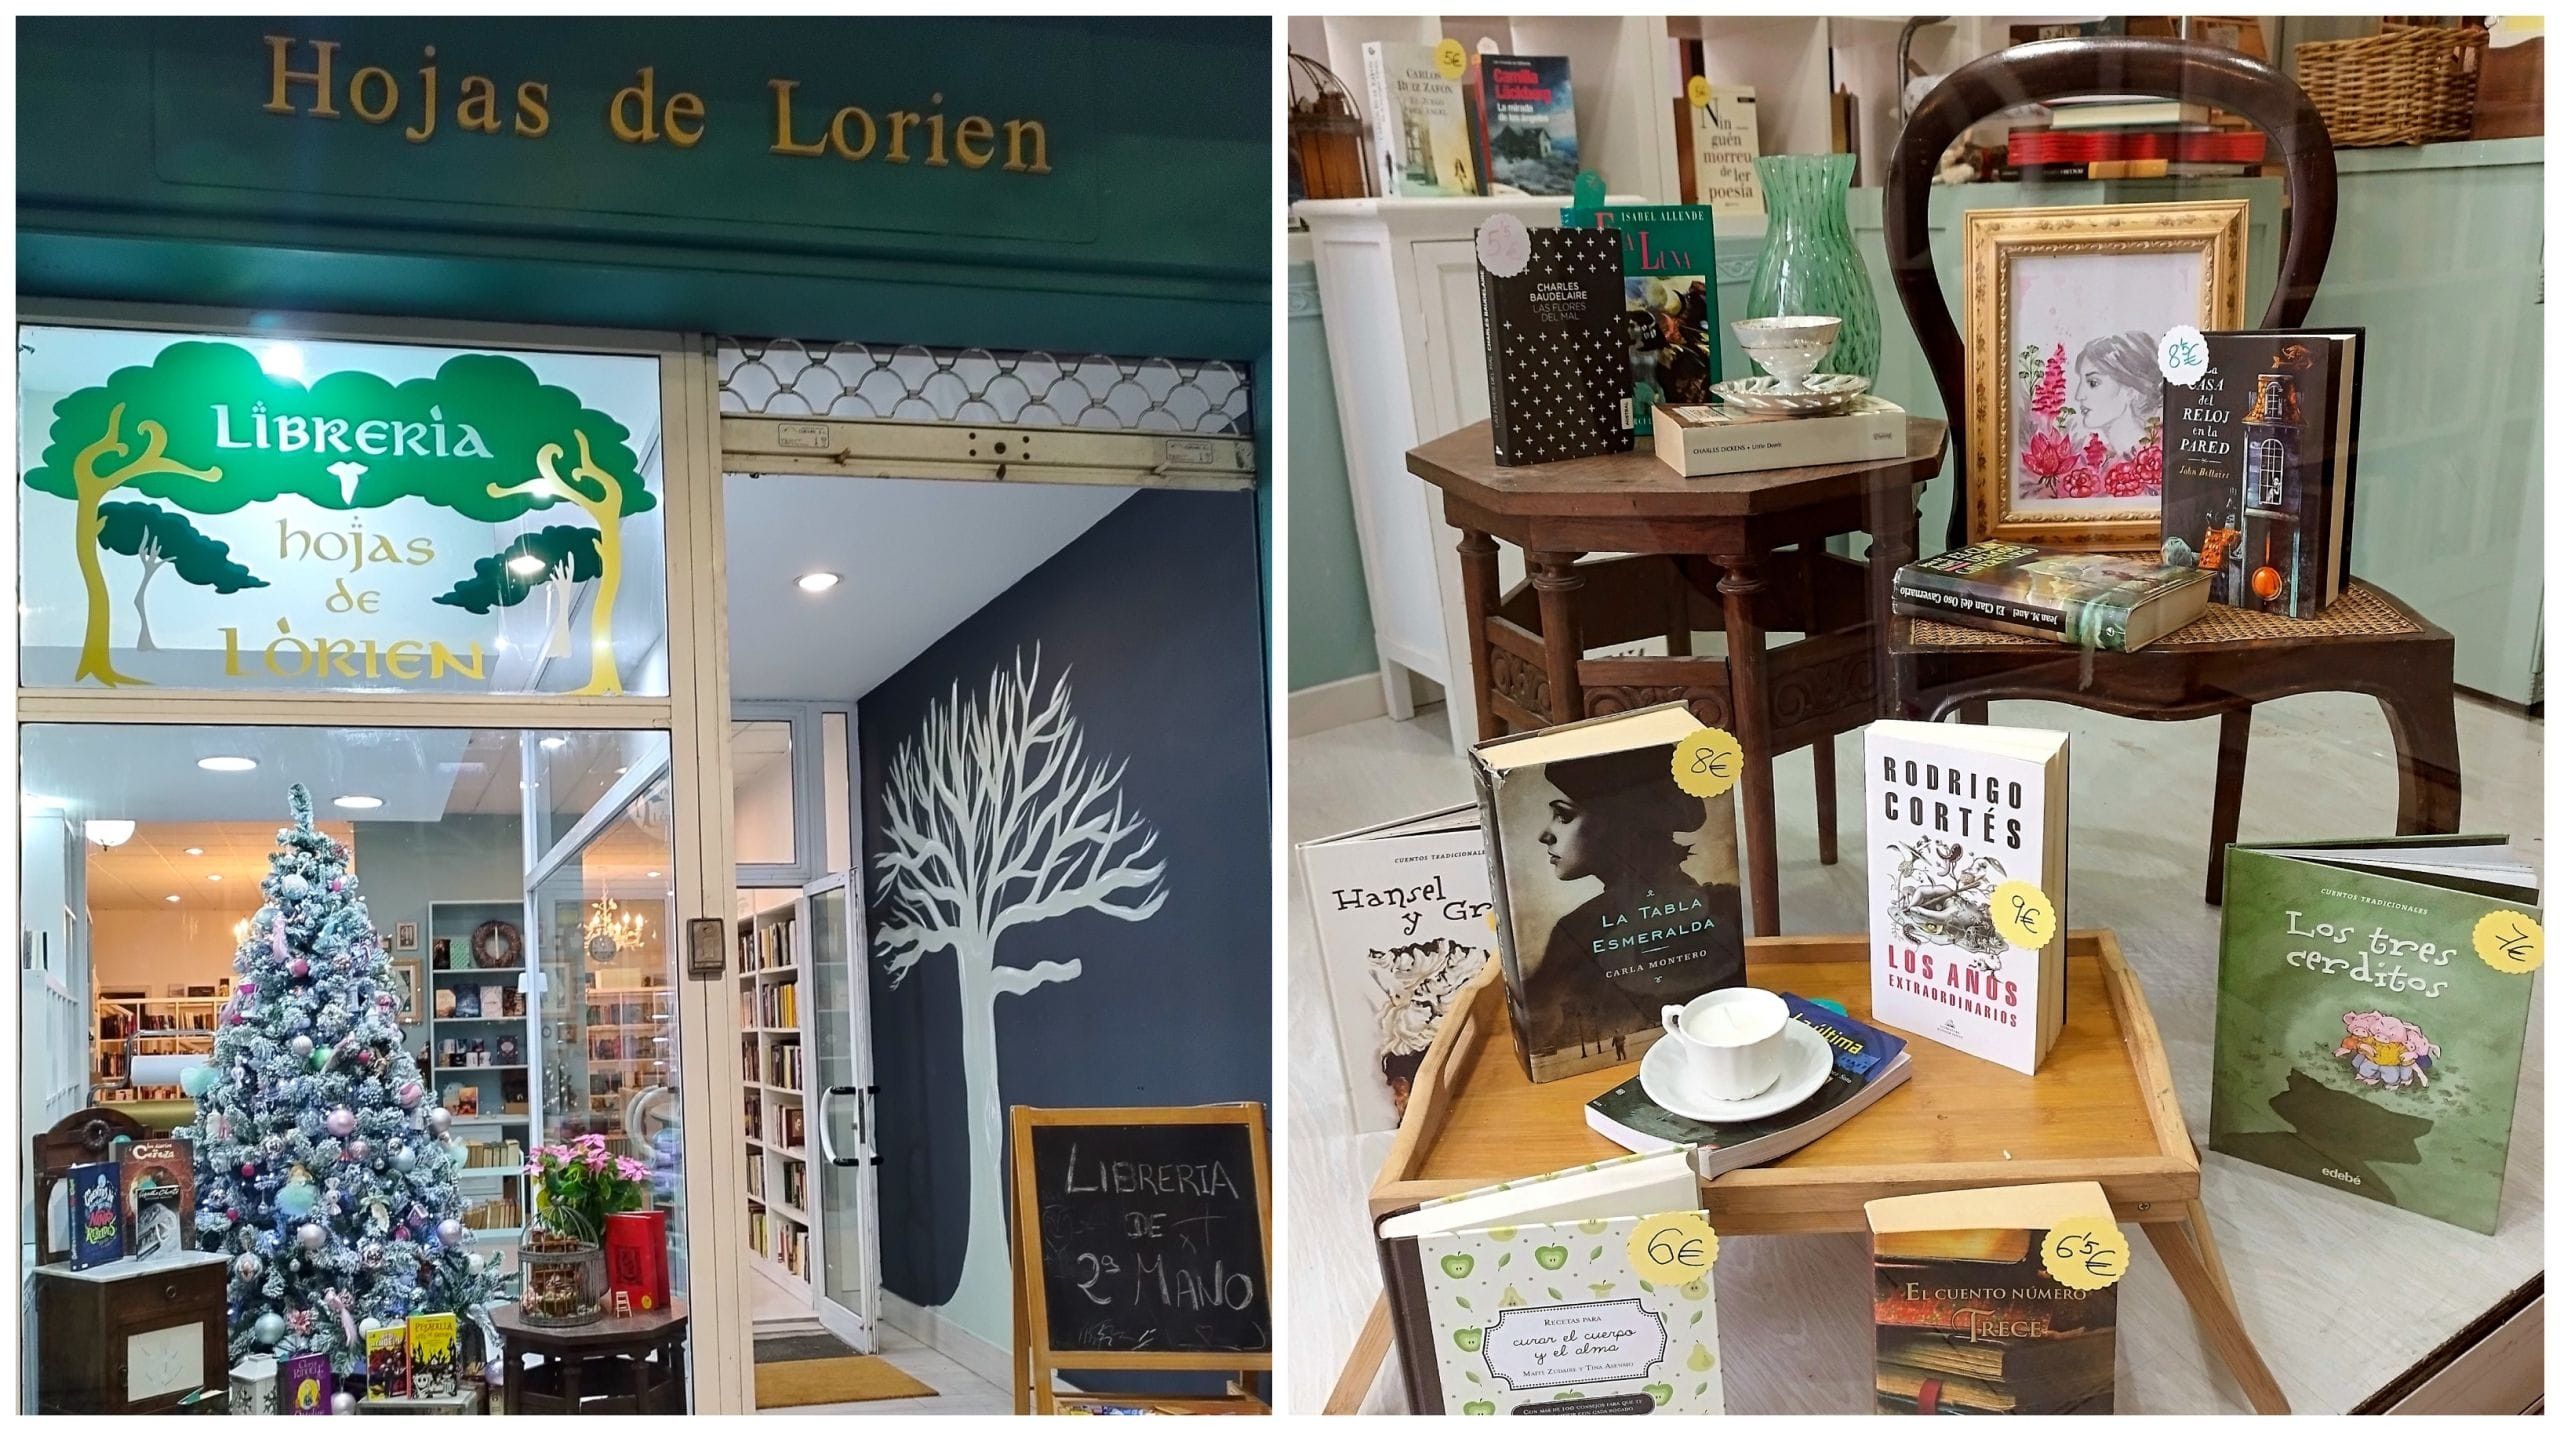 Hojas de Lorien, librería de segunda mano en Vilagarcía de Arousa. Foto: Cedida